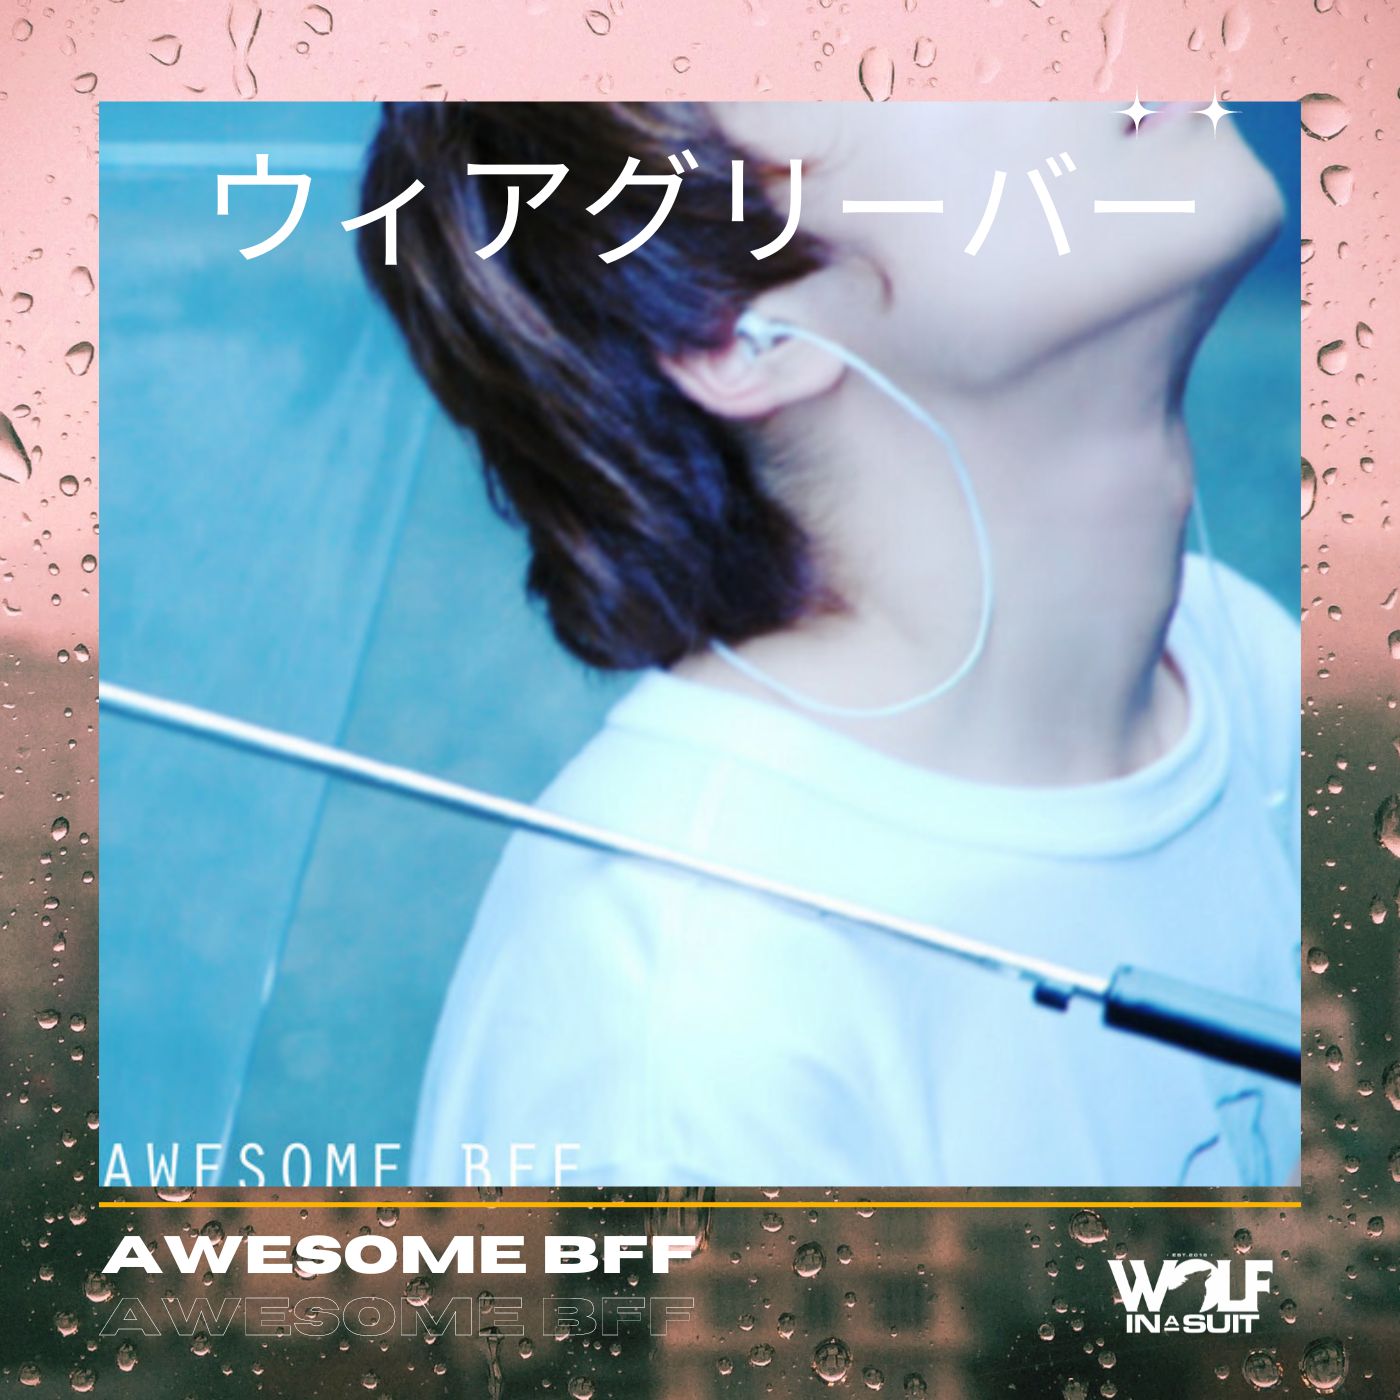 awesome bff - We are Gleeber - japan - indie - indie music - indie pop - indie rock - indie folk - new music - music blog - wolf in a suit - wolfinasuit - wolf in a suit blog - wolf in a suit music blog